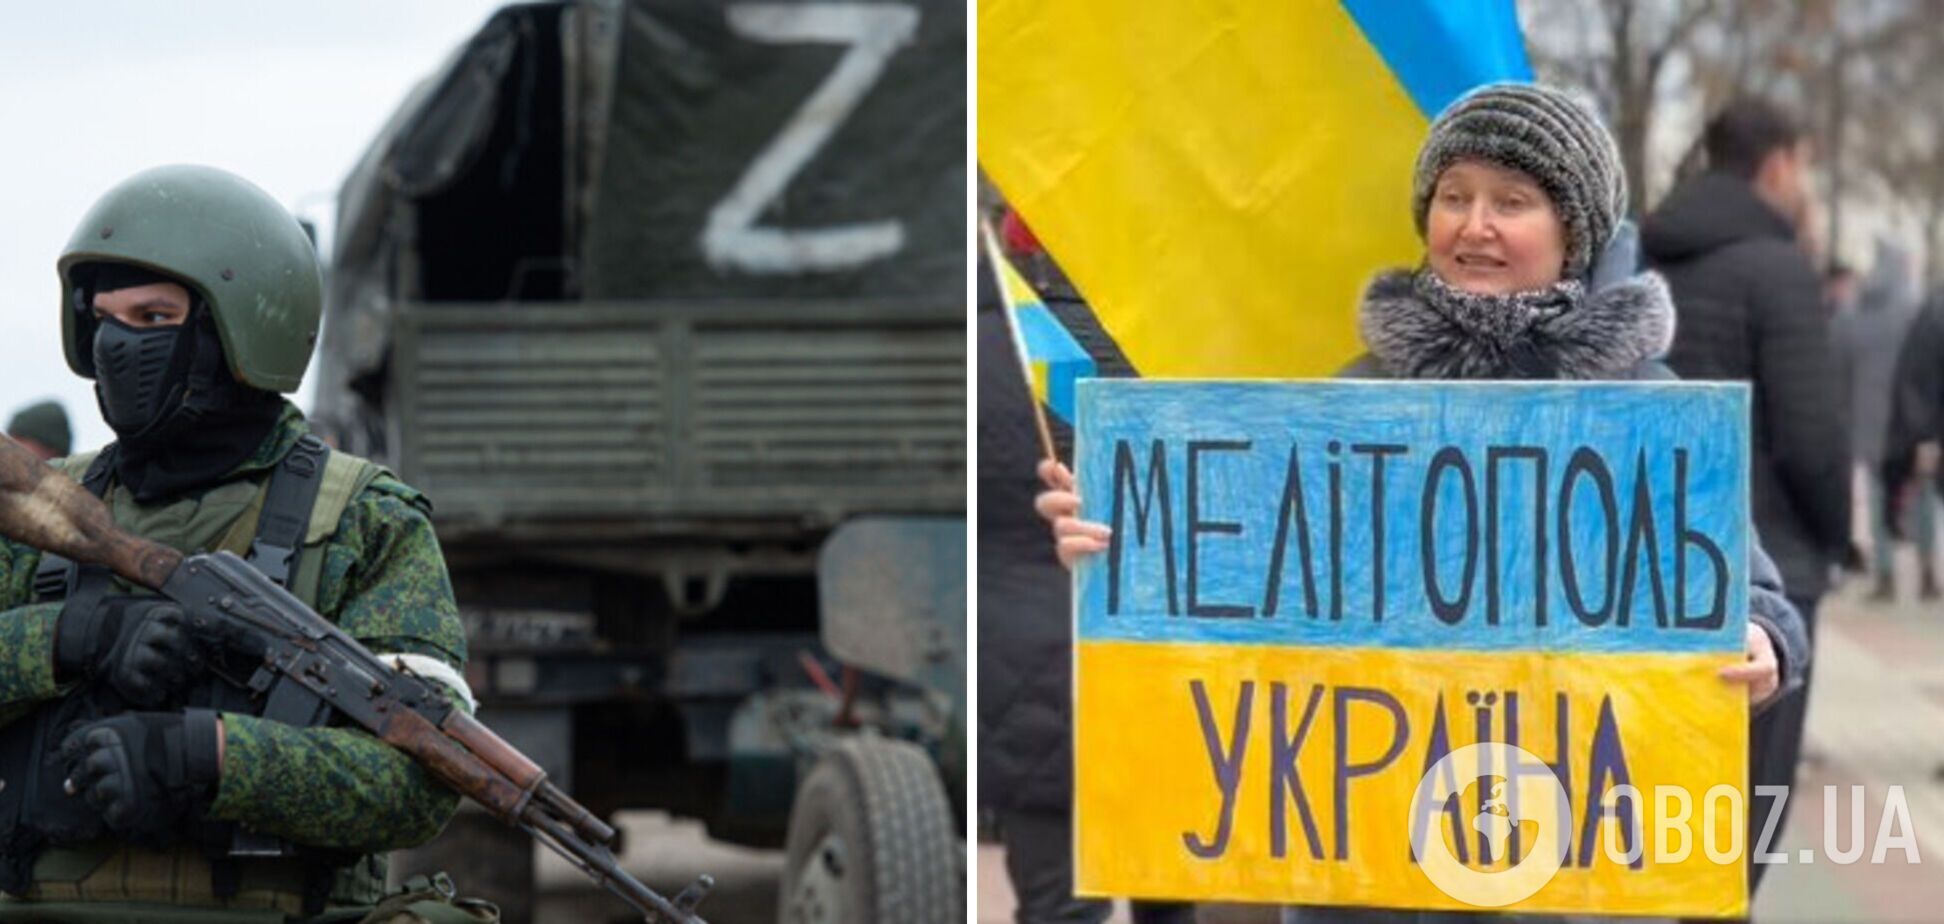 Окупанти збирають у Мелітополі проплачений мітинг на підтримку РФ: терміново потрібна картинка для росТБ